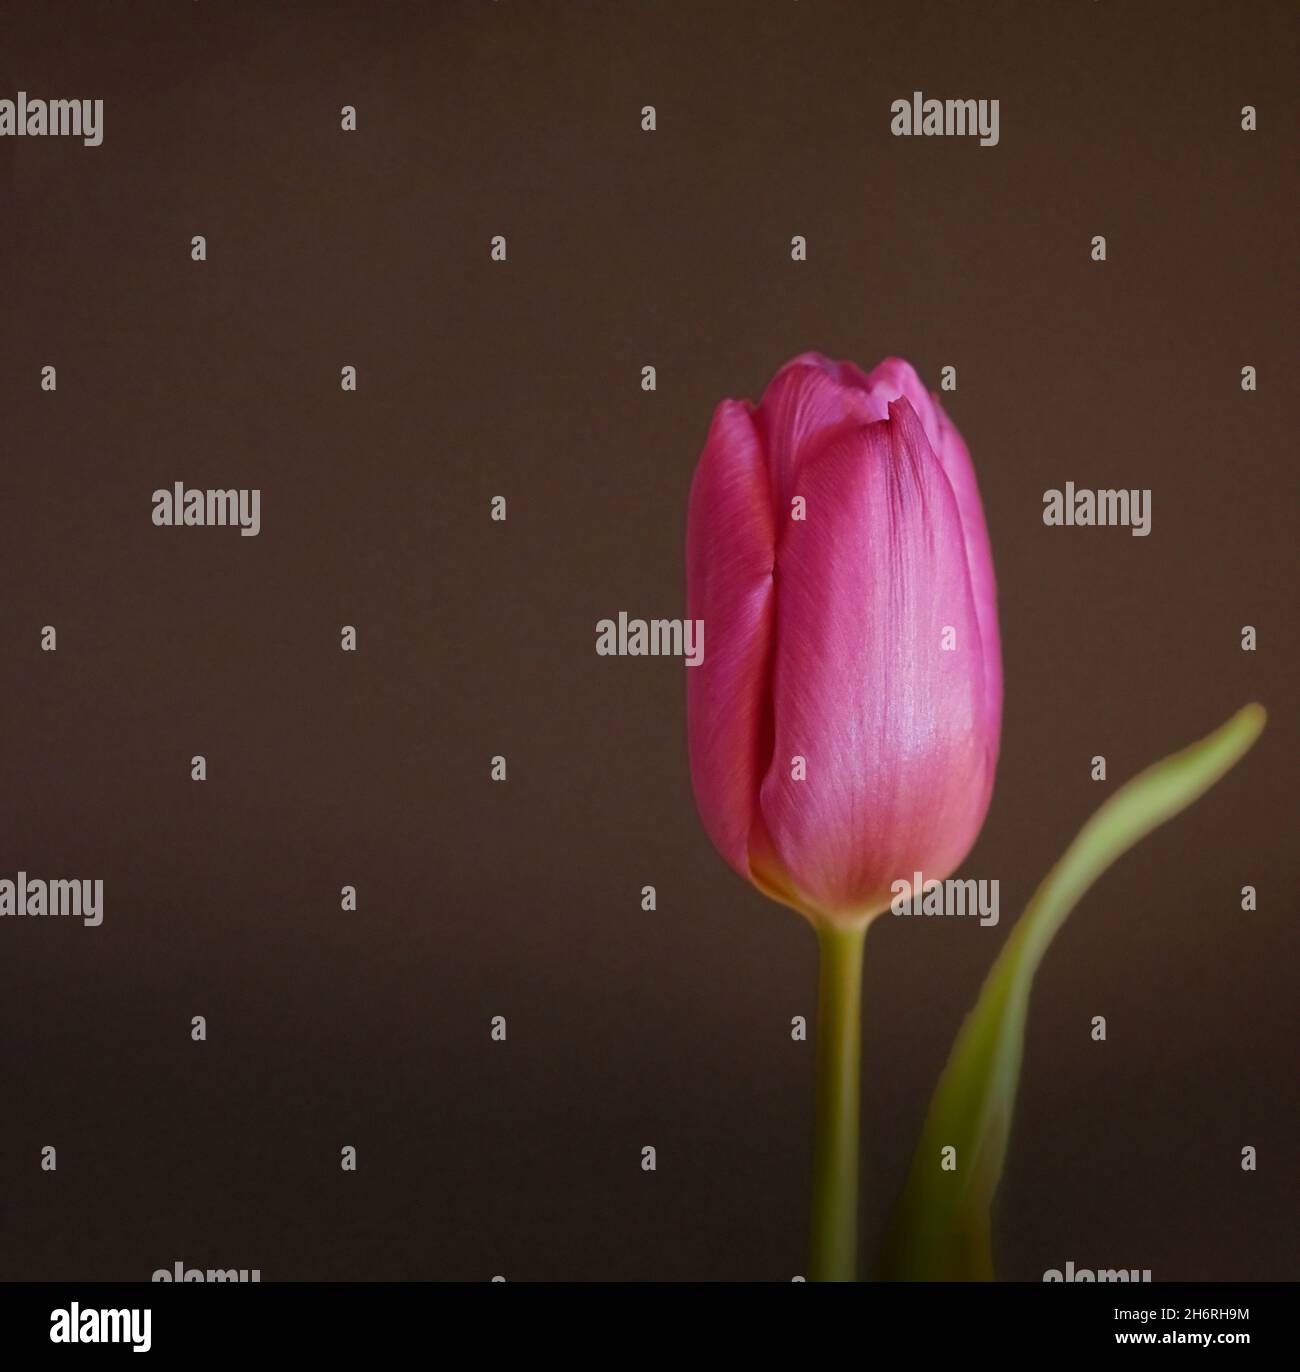 Impresionante tulipán de color lila o púrpura, adecuado como tarjeta de felicitación Foto de stock